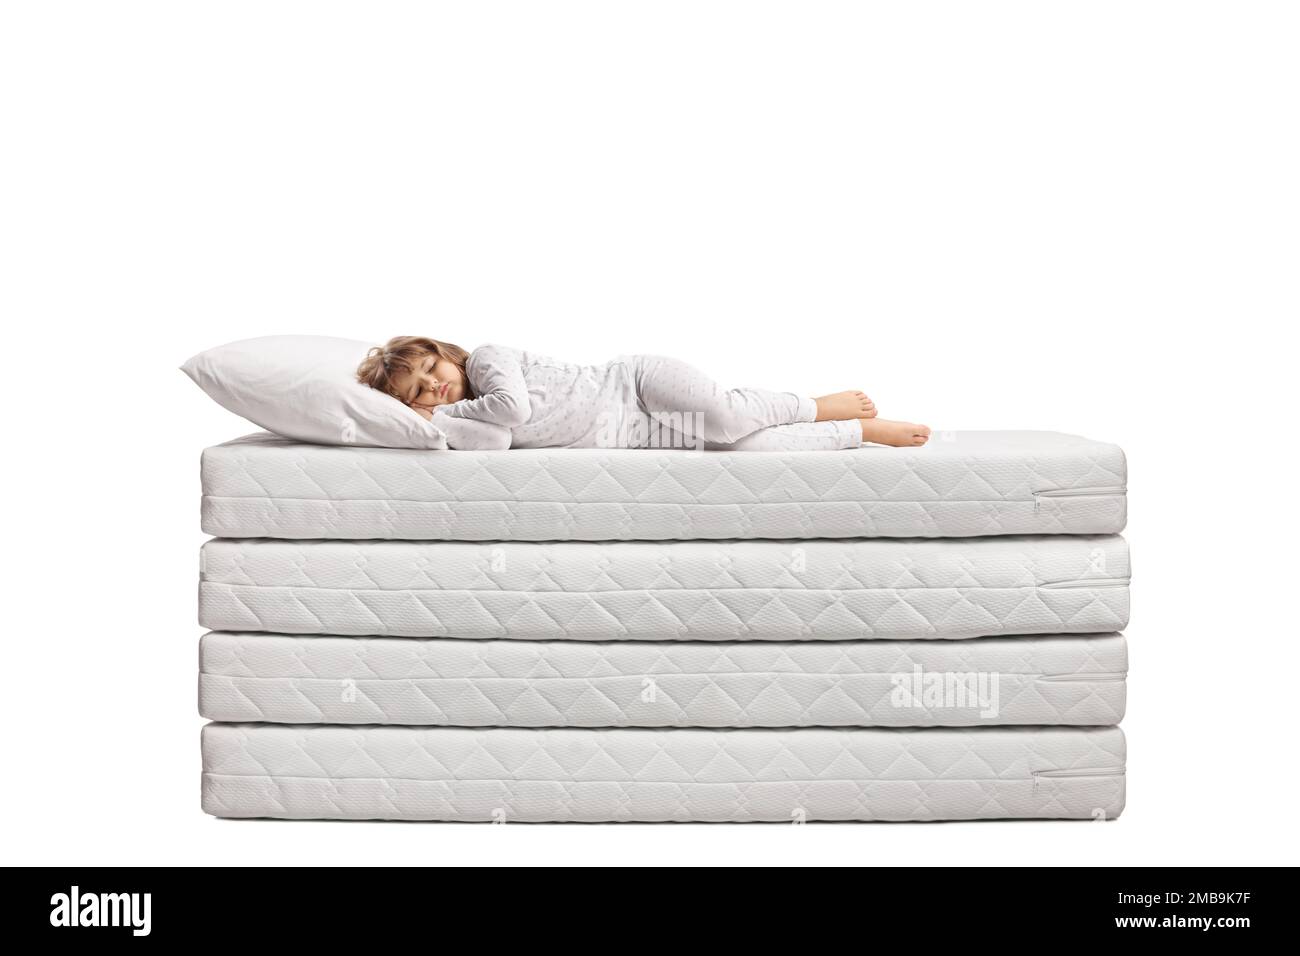 Bambina in pigiama che dorme su un mucchio di materassi isolati su sfondo bianco Foto Stock